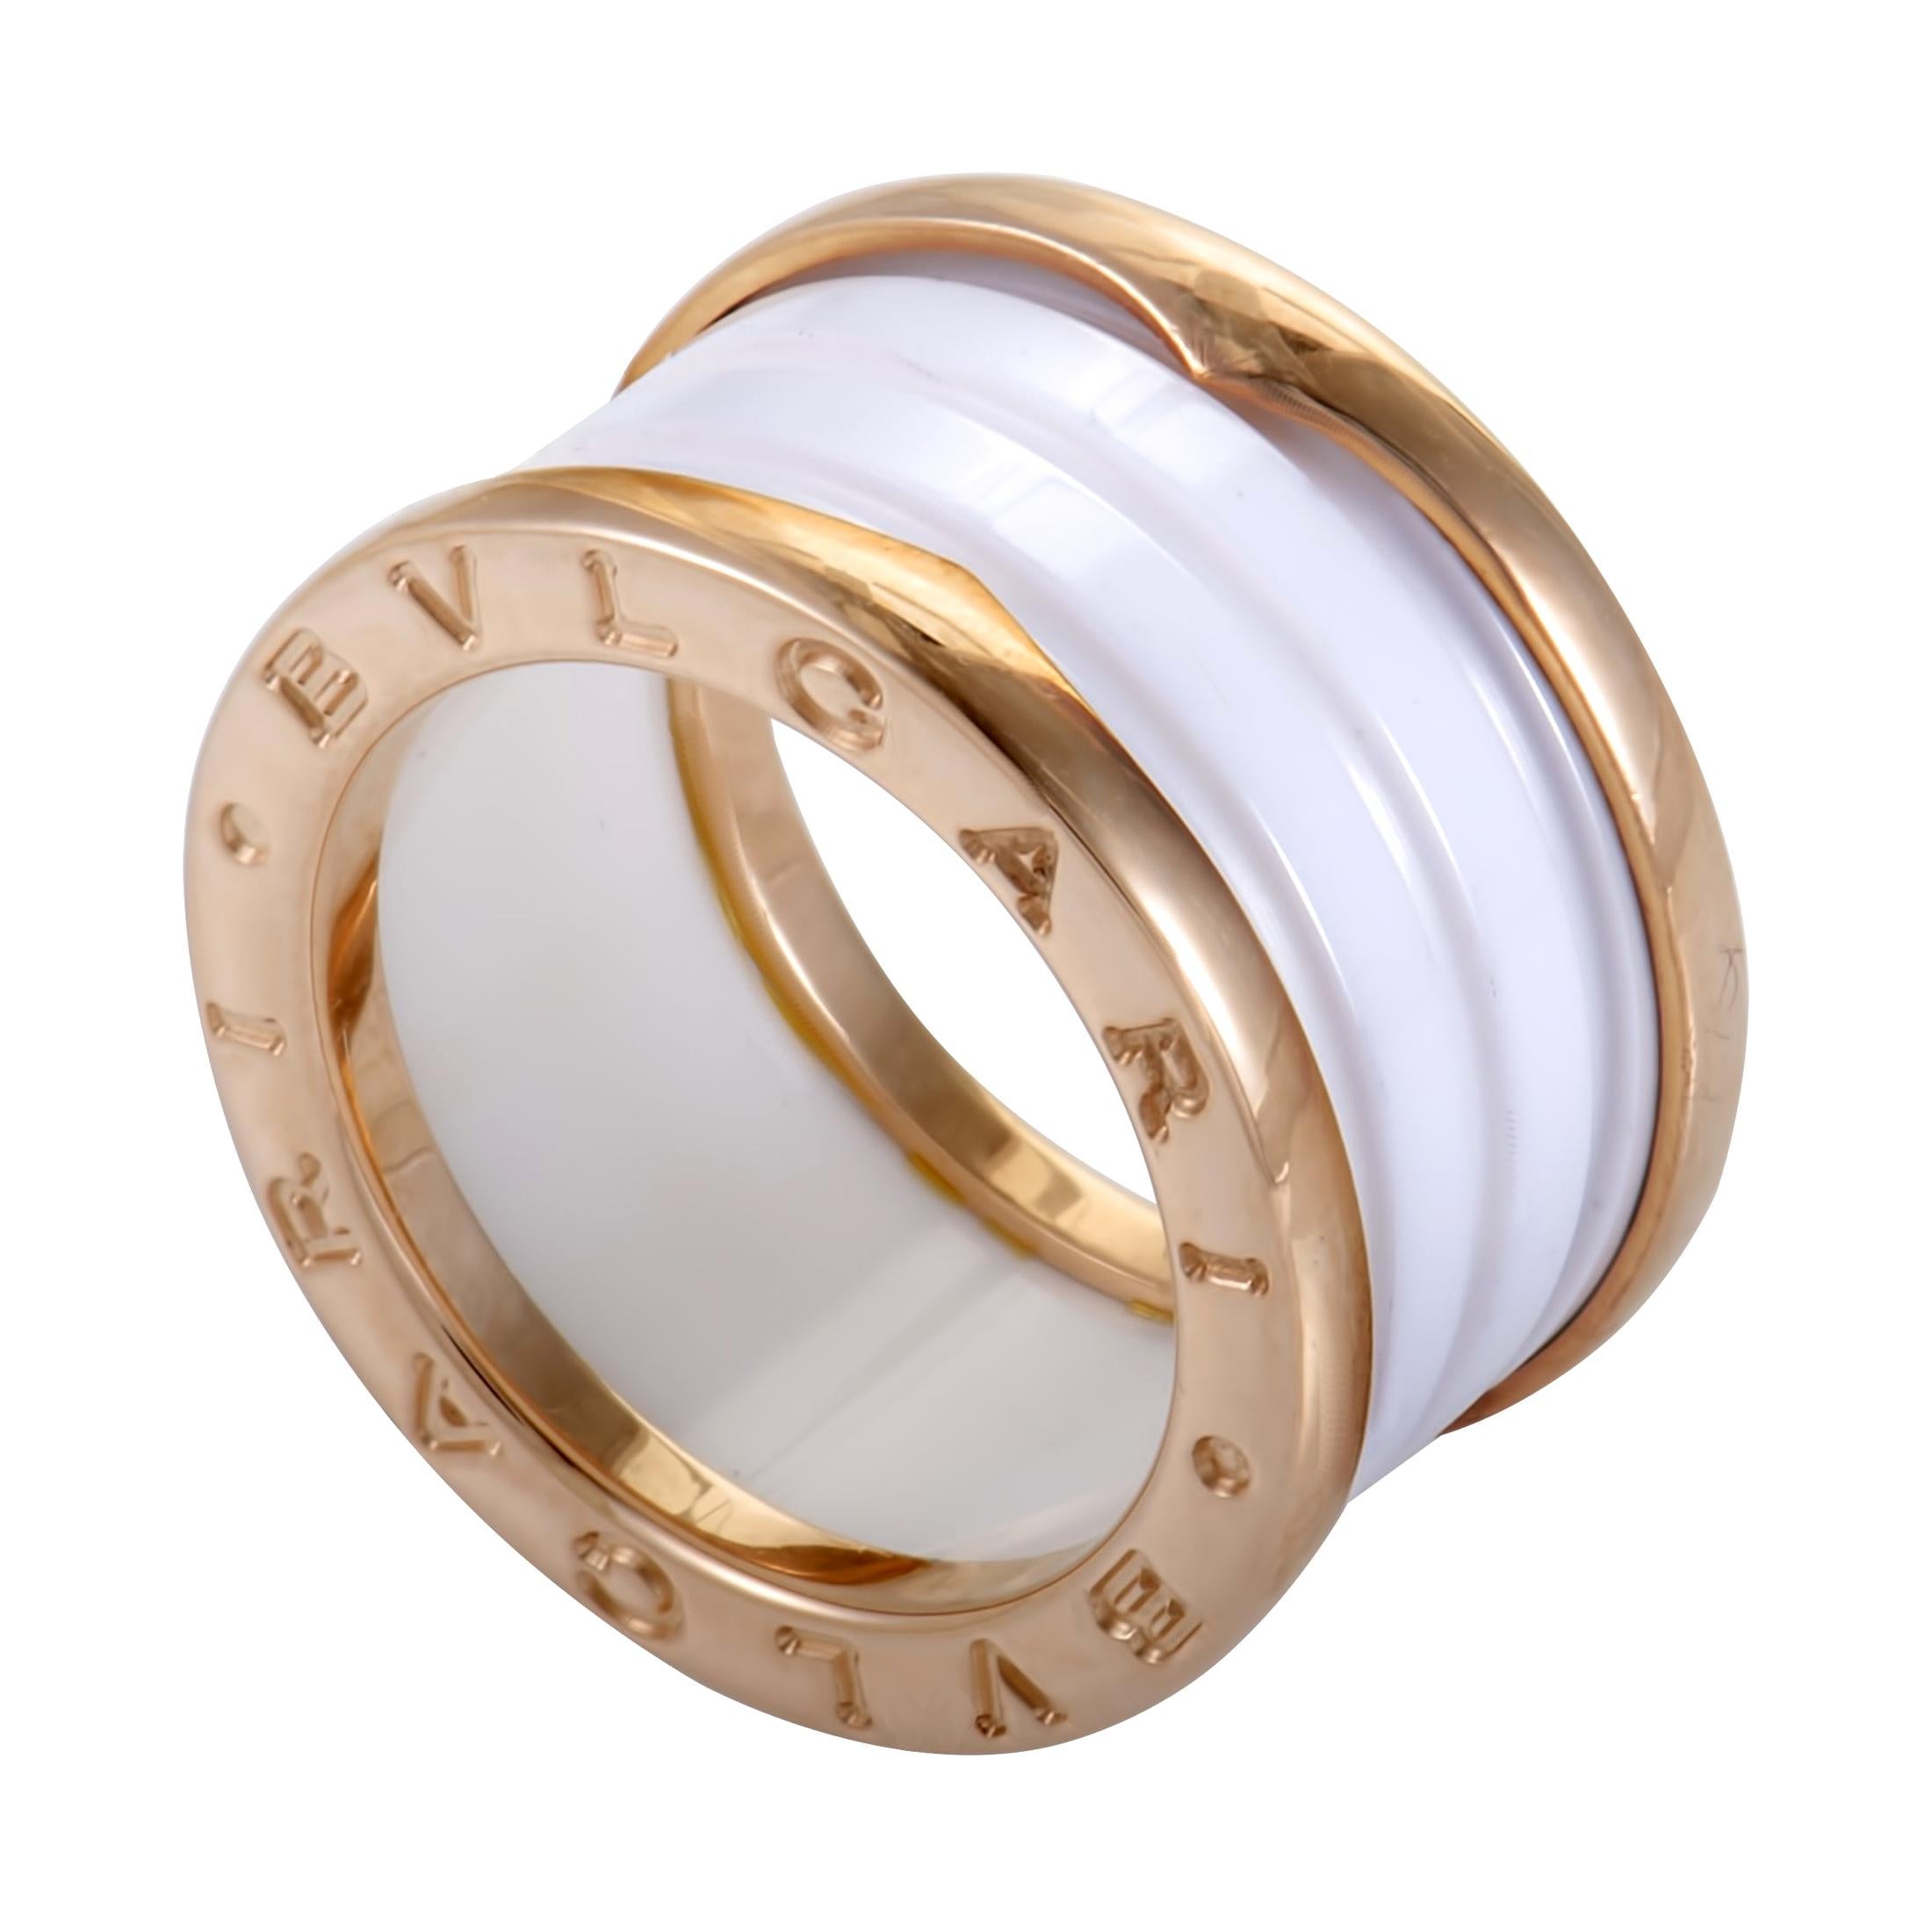 Bvlgari B.Zero1 18 Karat Rose Gold White Ceramic 3-Band Ring